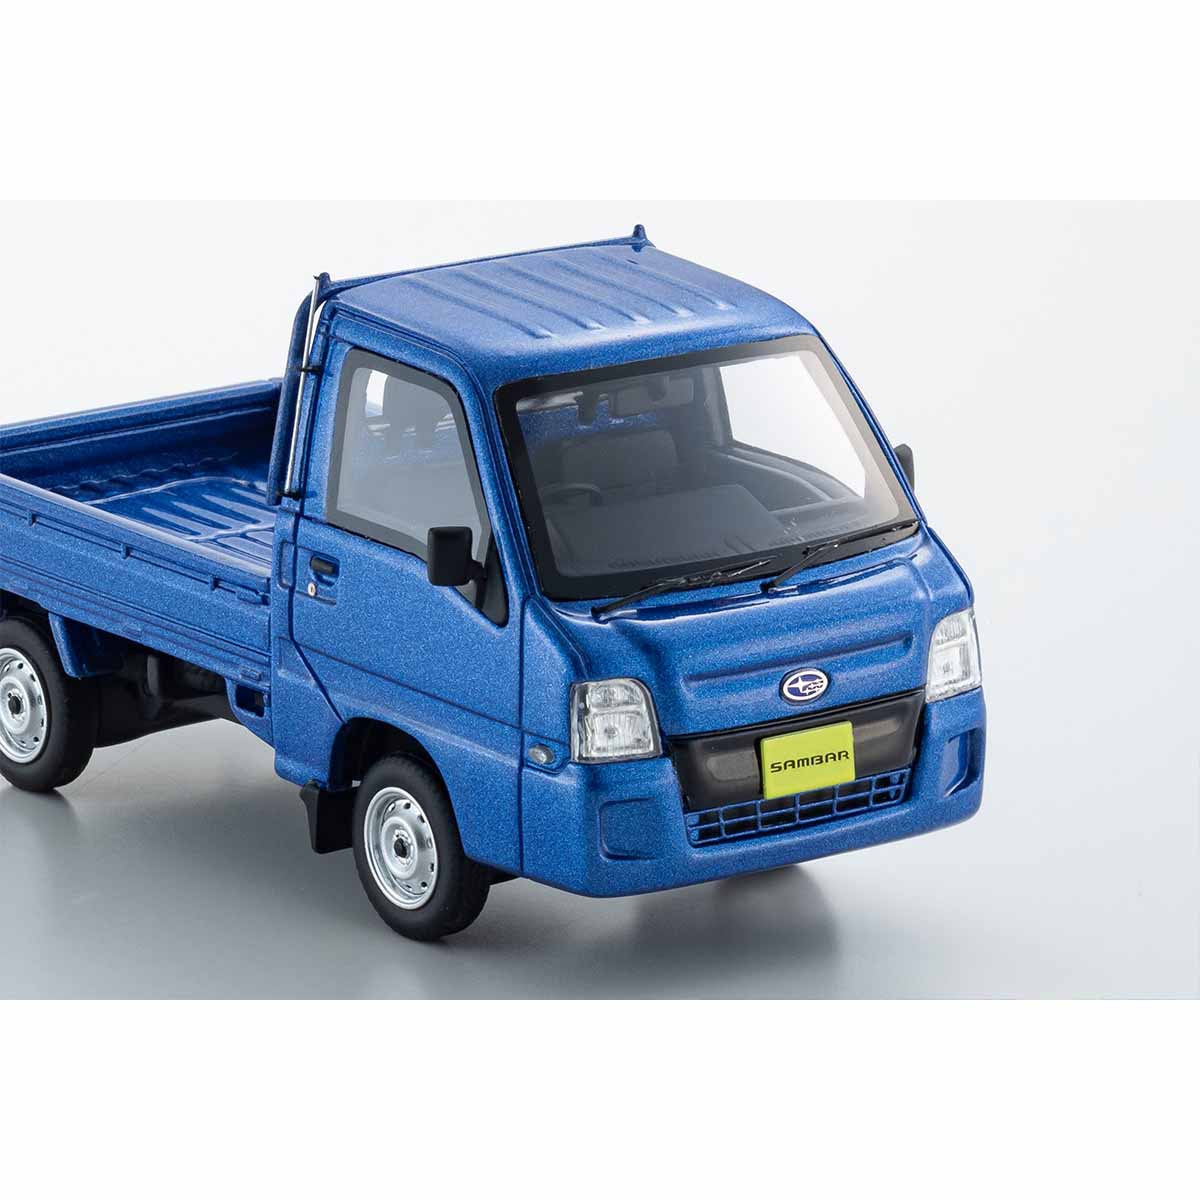 SUBARU SAMBAR TRUCK - Blue - 1:43 Scale Resin Model Truck